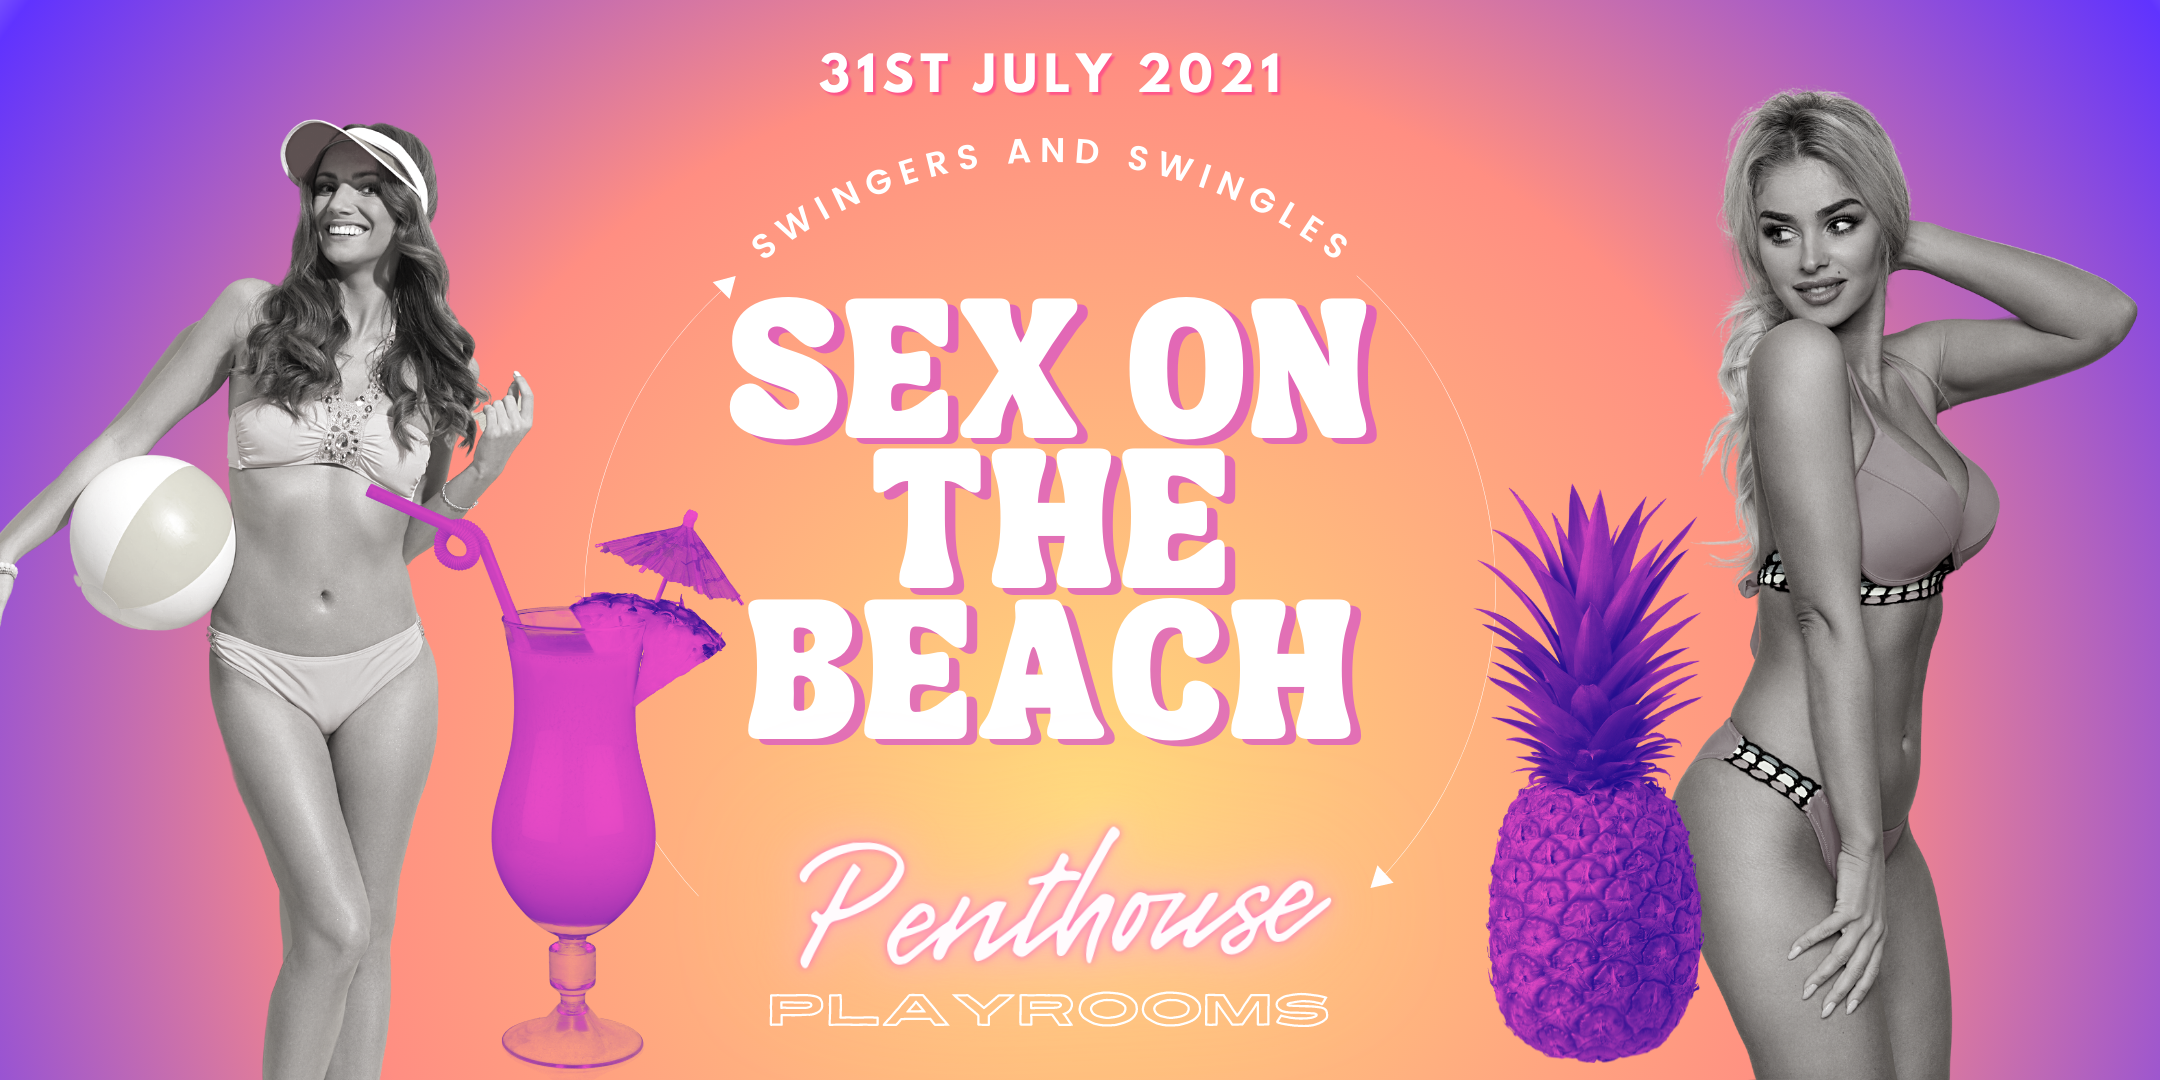 Sex on The Beach Penthouse Playrooms Bikini Beach Party